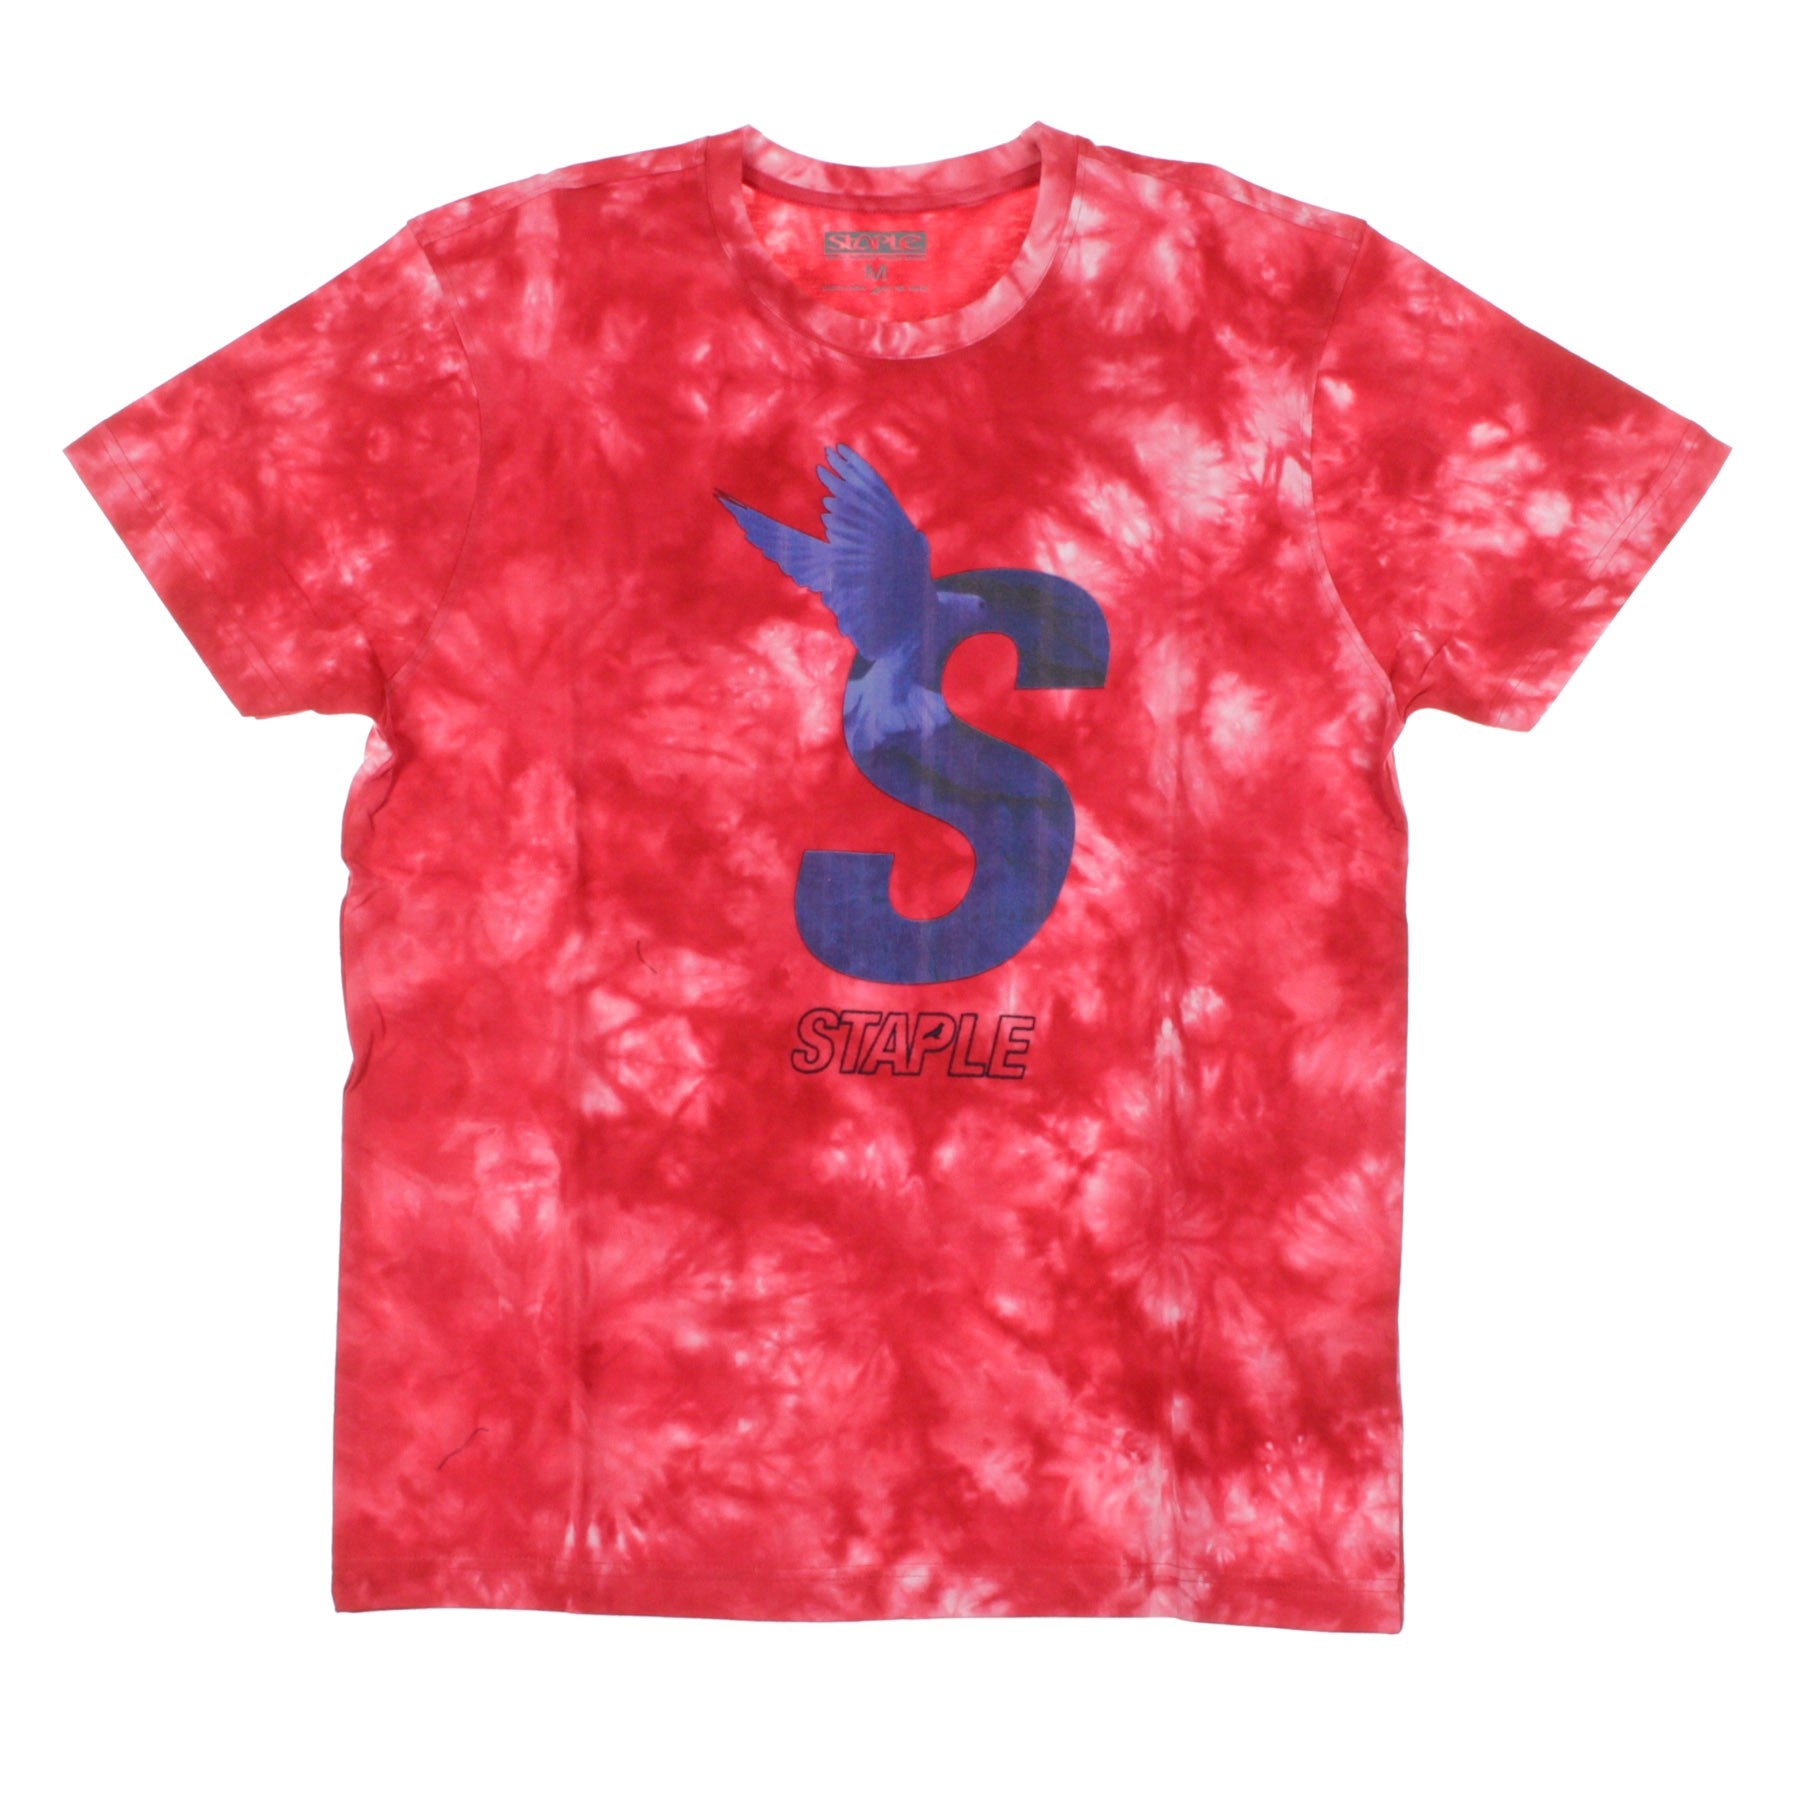 Men's T-Shirt Ess Tye Dyed Tee Red